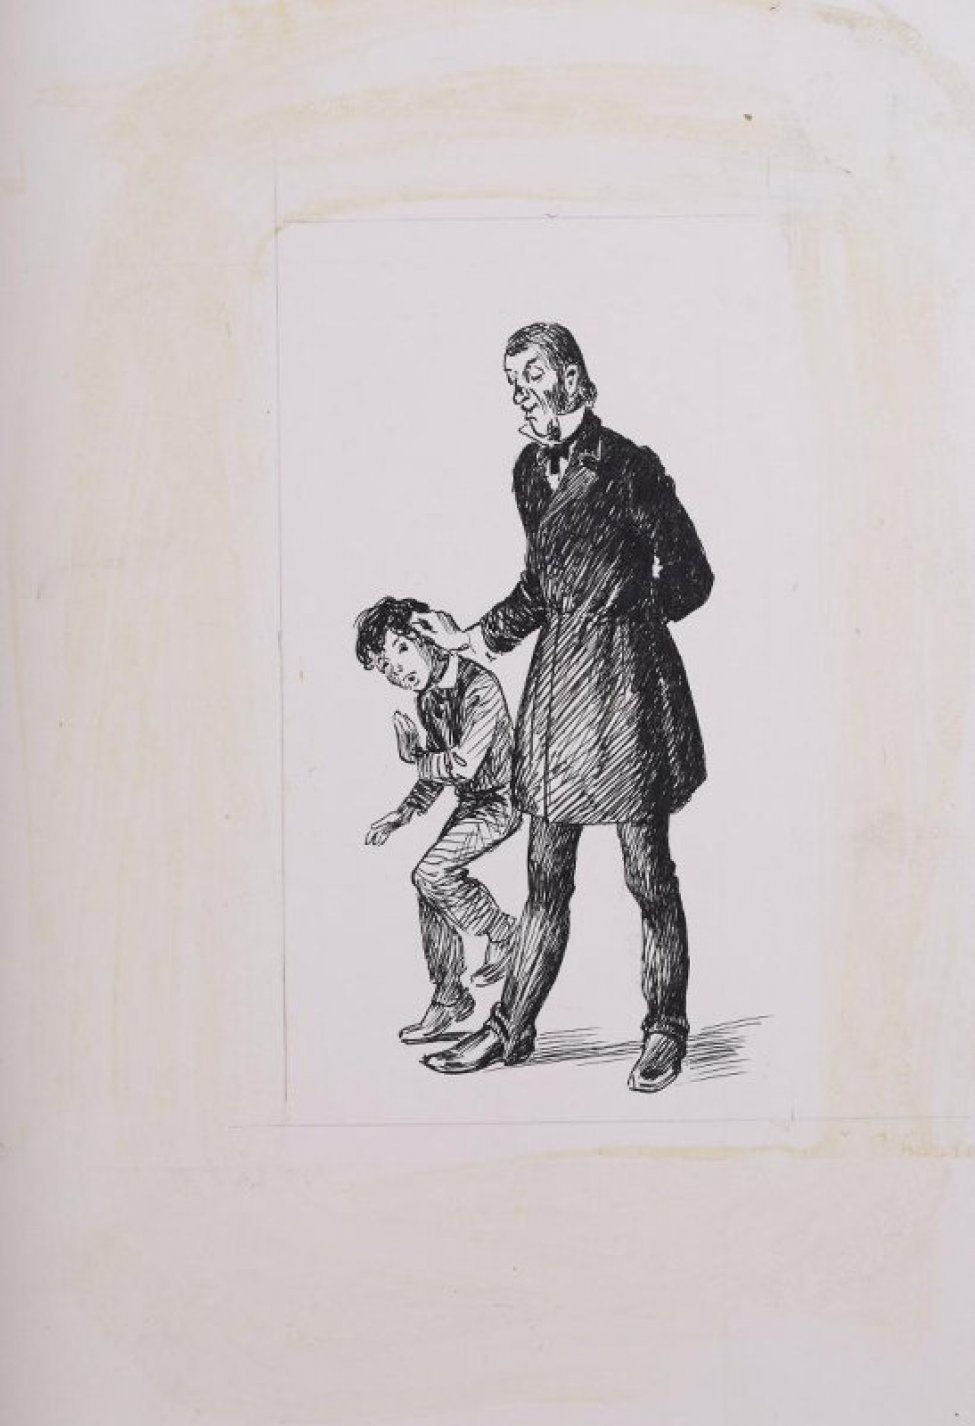 Изображен в рост в 3/4 повороте пожилой мужчина, закинувший левую руку за спину, а правой взявший за ухо скорчившегося мальчика.